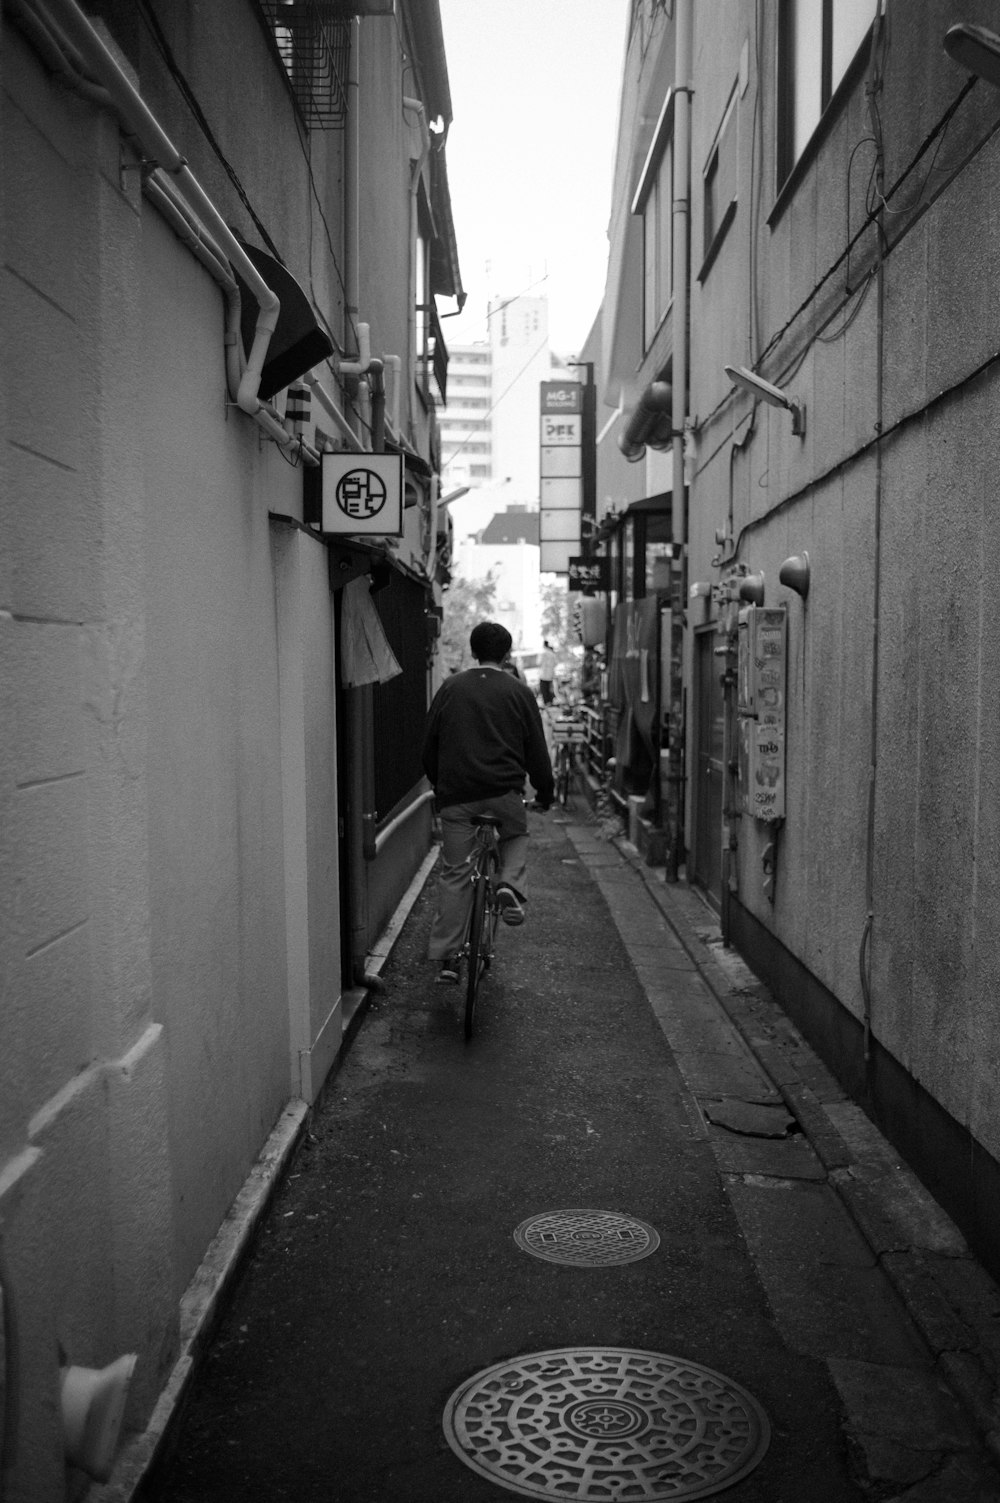 a man riding a bike down a narrow alley way